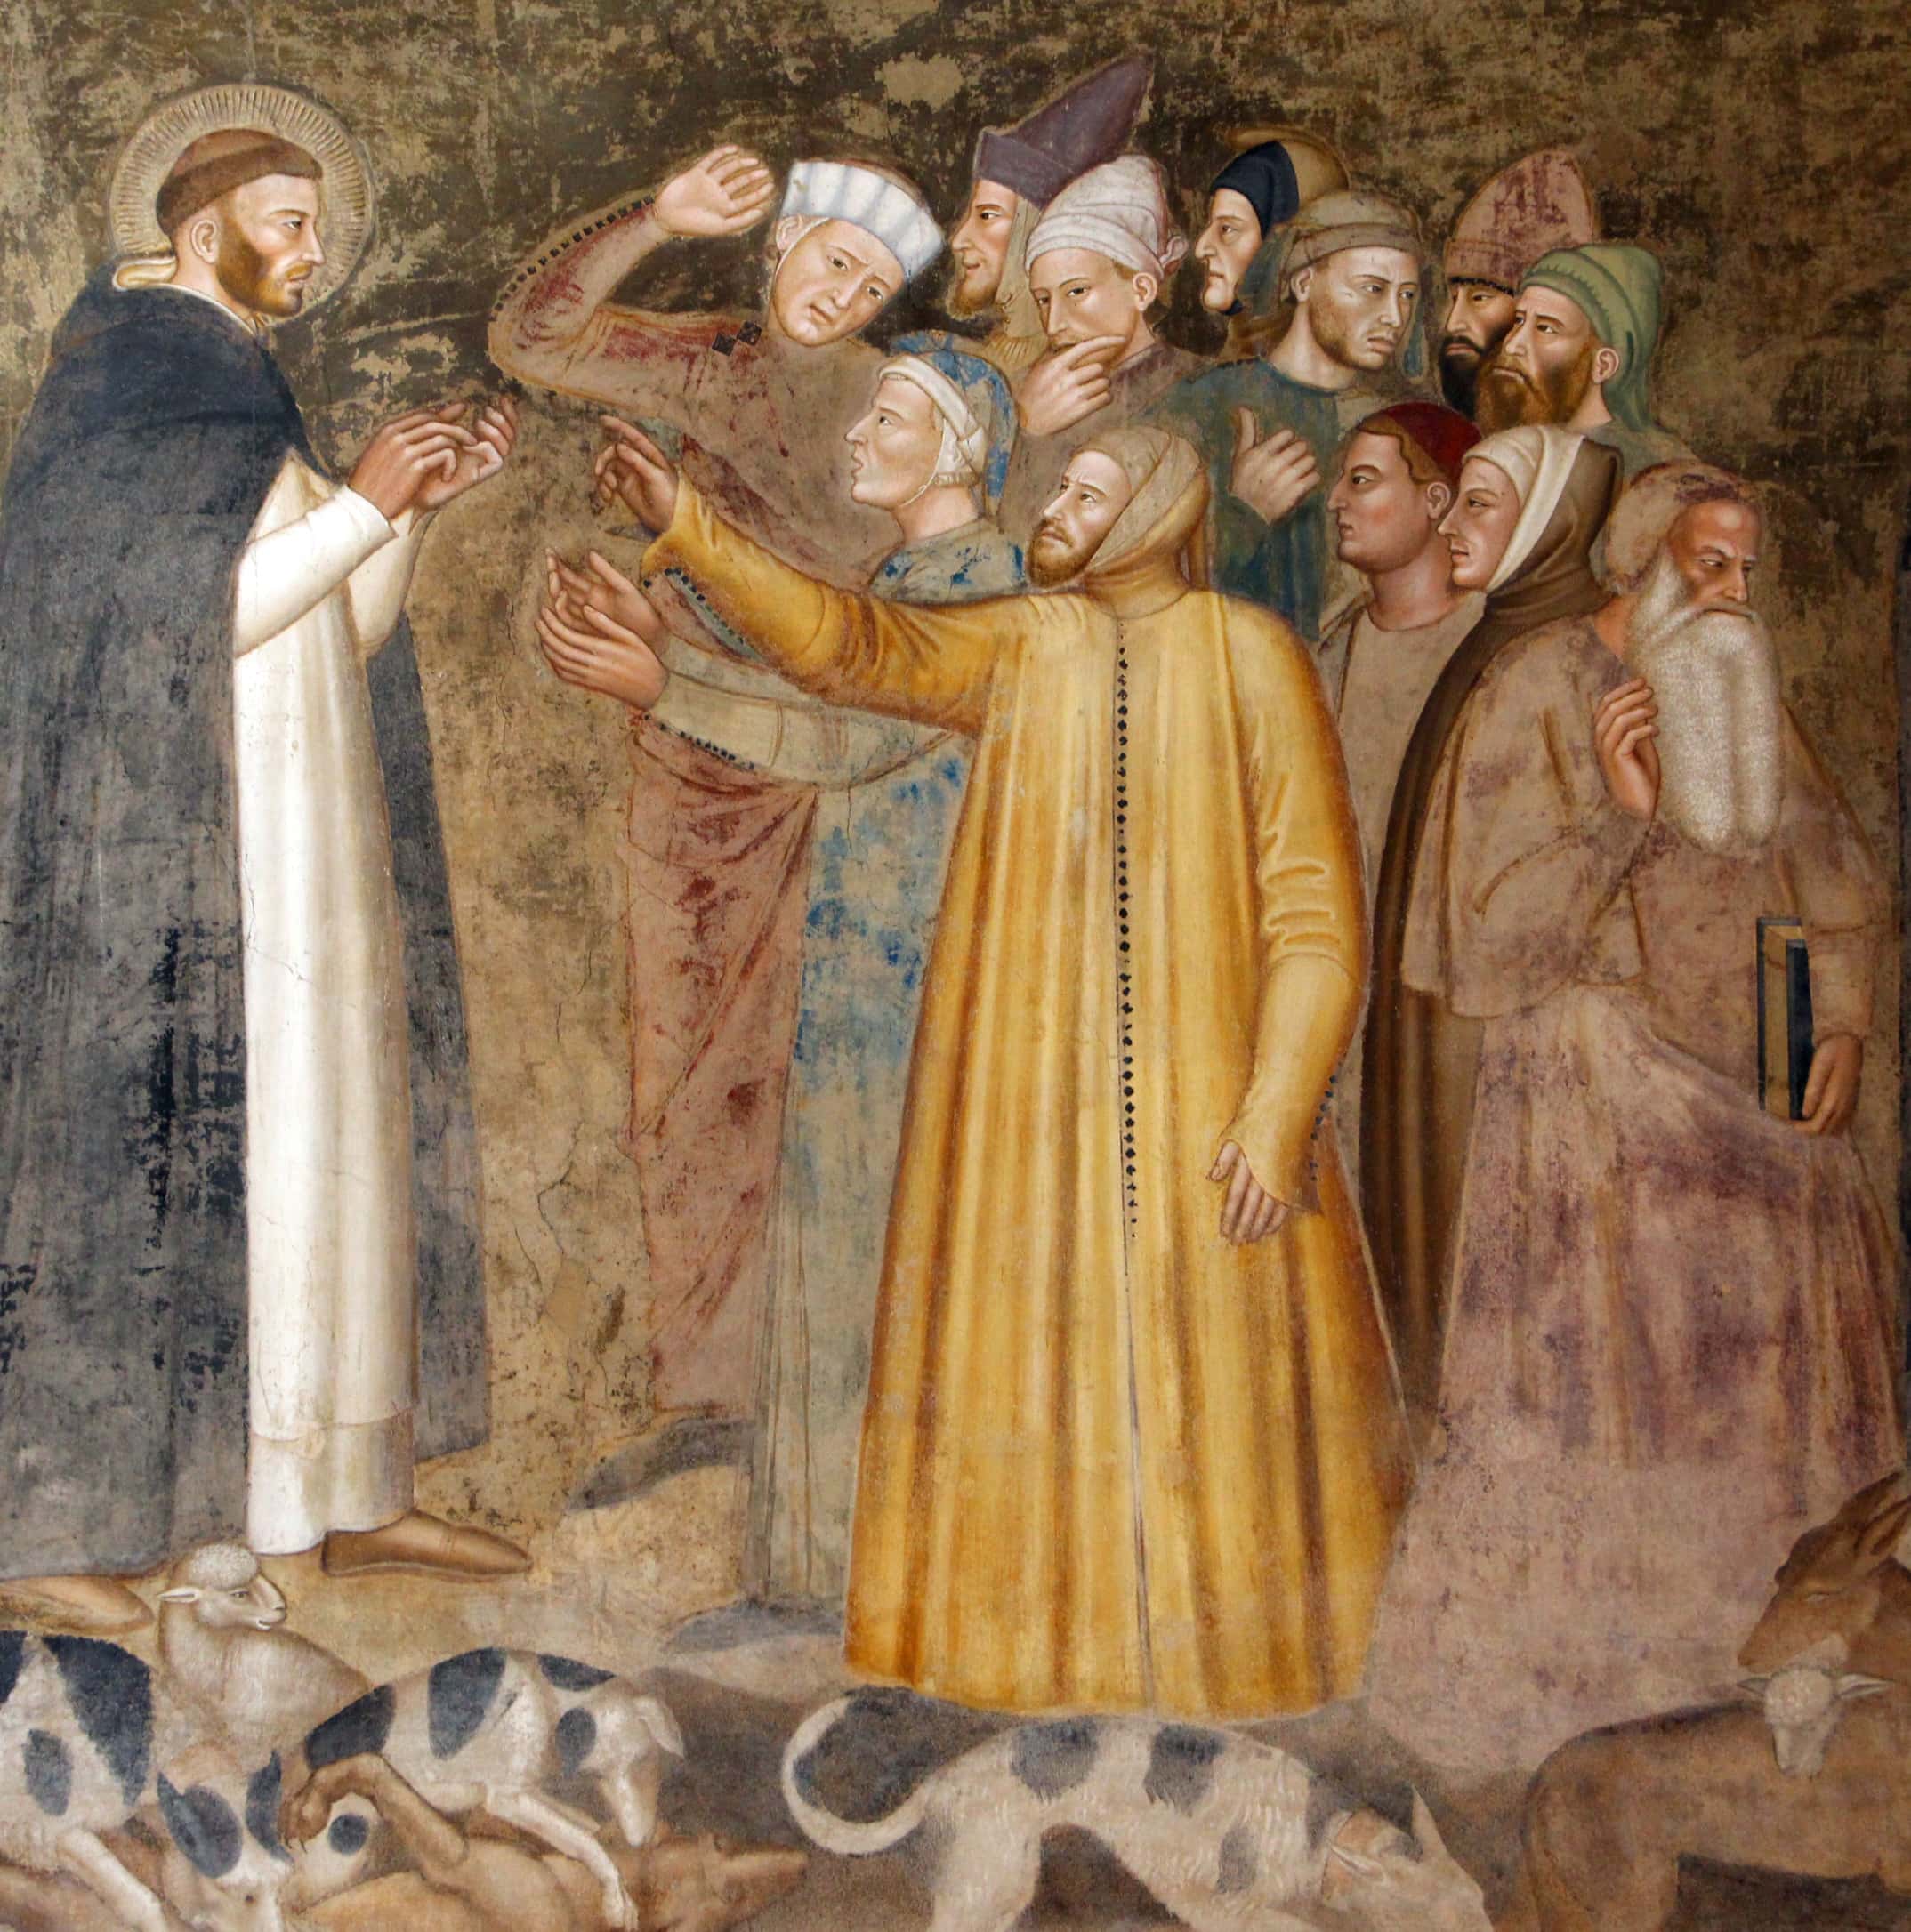 Verski spor med Katari in dominikom, ustanoviteljem Dominikancev in inkvizicije – Detajl s freske di Bonaiuta